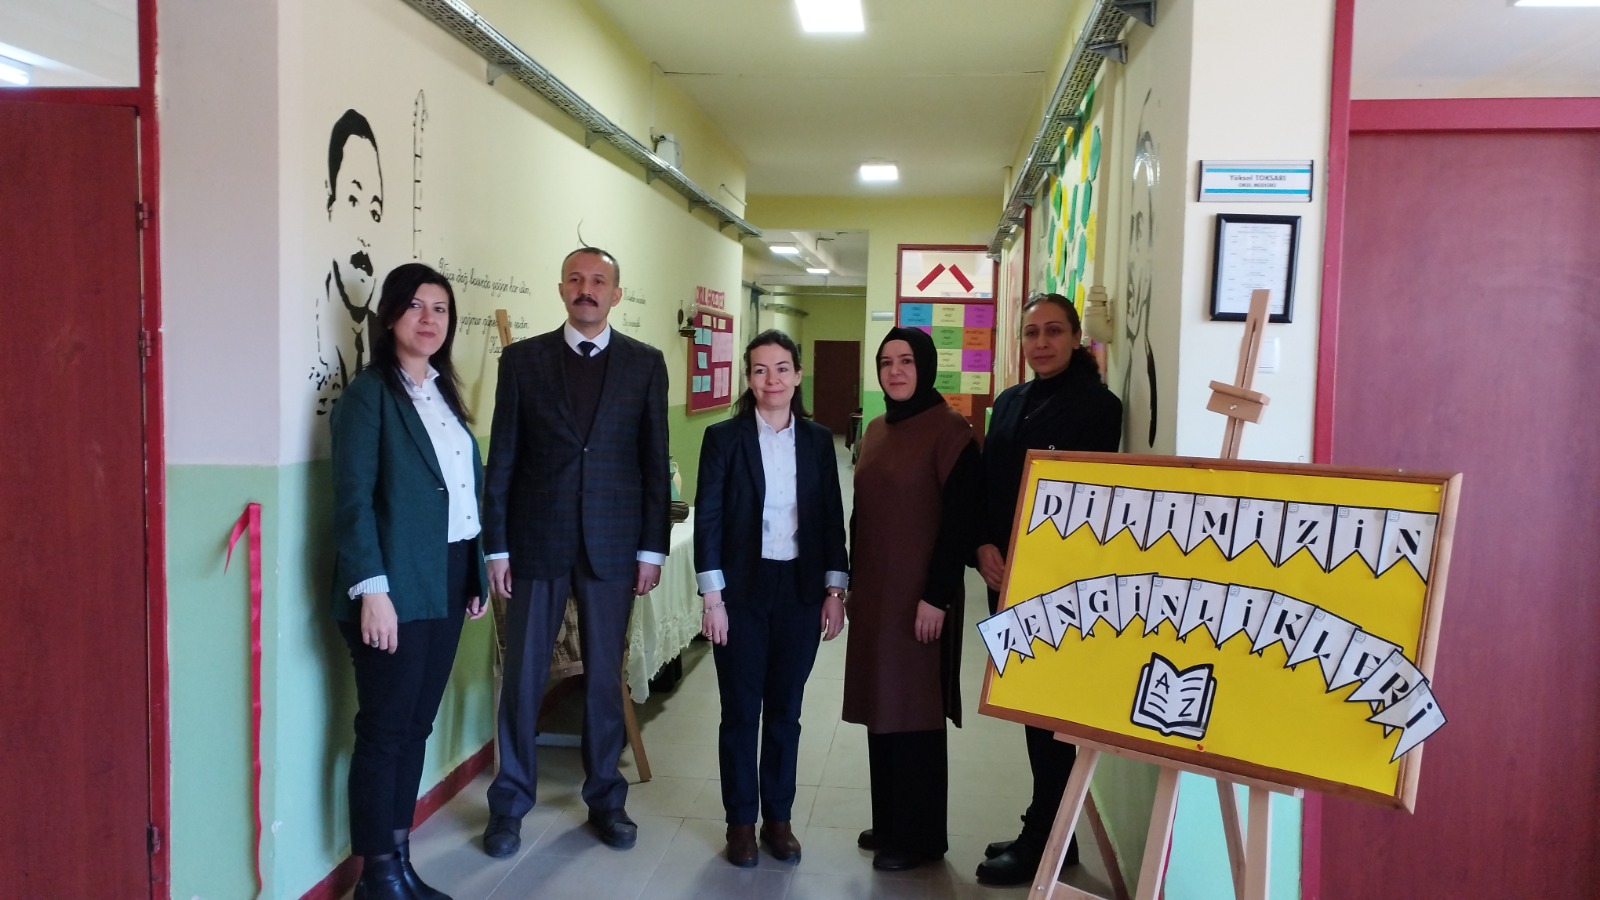 kirikkale-ogrenciler-dilimizin-zenginlikleri-projesi-haber-3 Kırıkkale'de Öğrenciler 'Dilimizin Zenginlikleri' Projesi İle Kültürel Bağ Kuracak